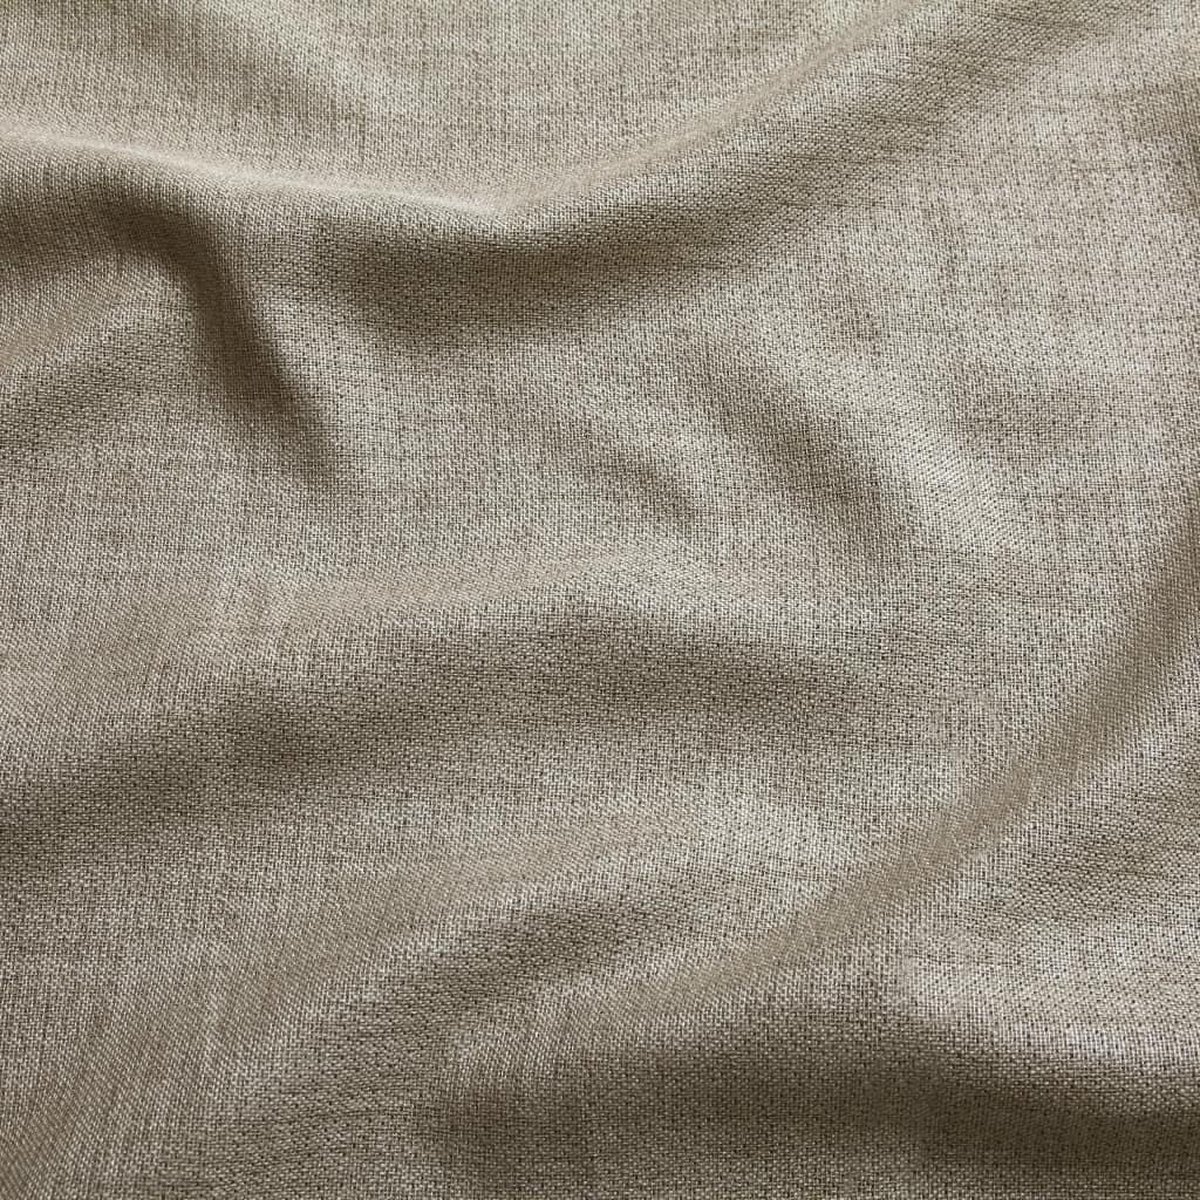 Kant en klaar gordijn linnen - Met Ringen - 140 x 260 cm - Beige